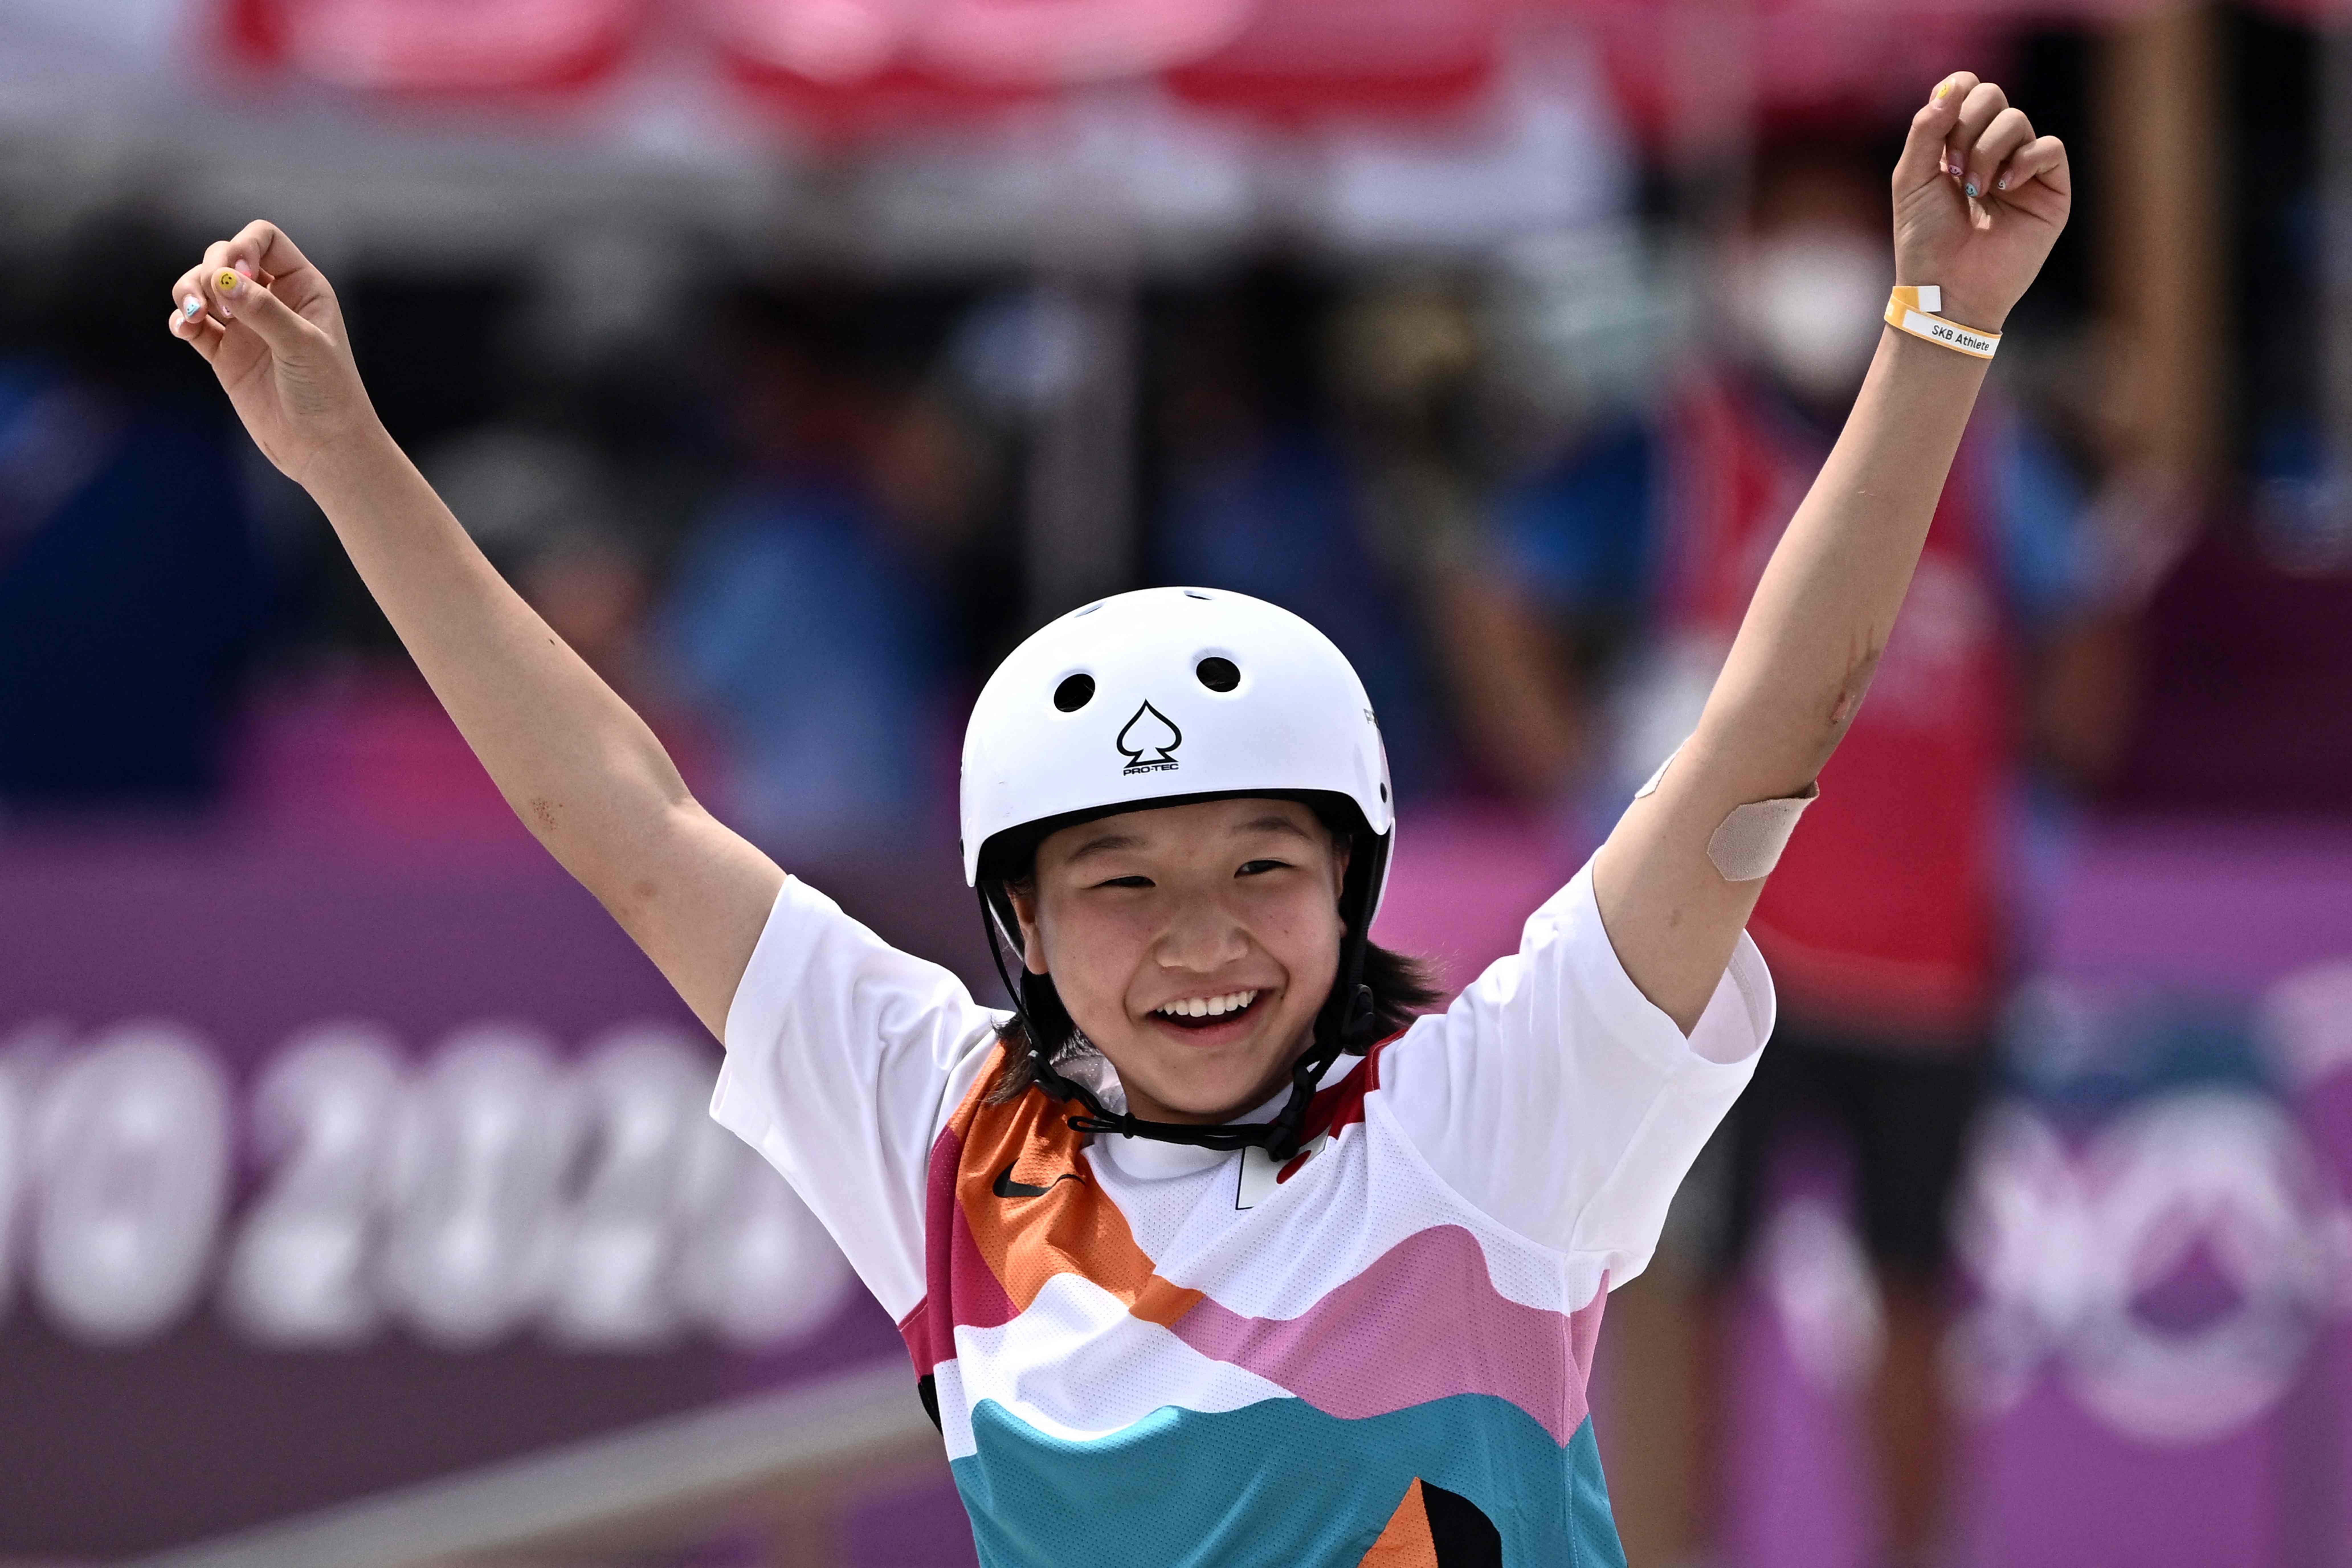 La japonesa Momiji Nishiya celebra su victoria en los Juegos Olímpicos de Tokio 2020. Ganó la medalla de oro en el skate. La competencia se disputó en el Ariake Sports Park. Foto Prensa Libre: AFP.